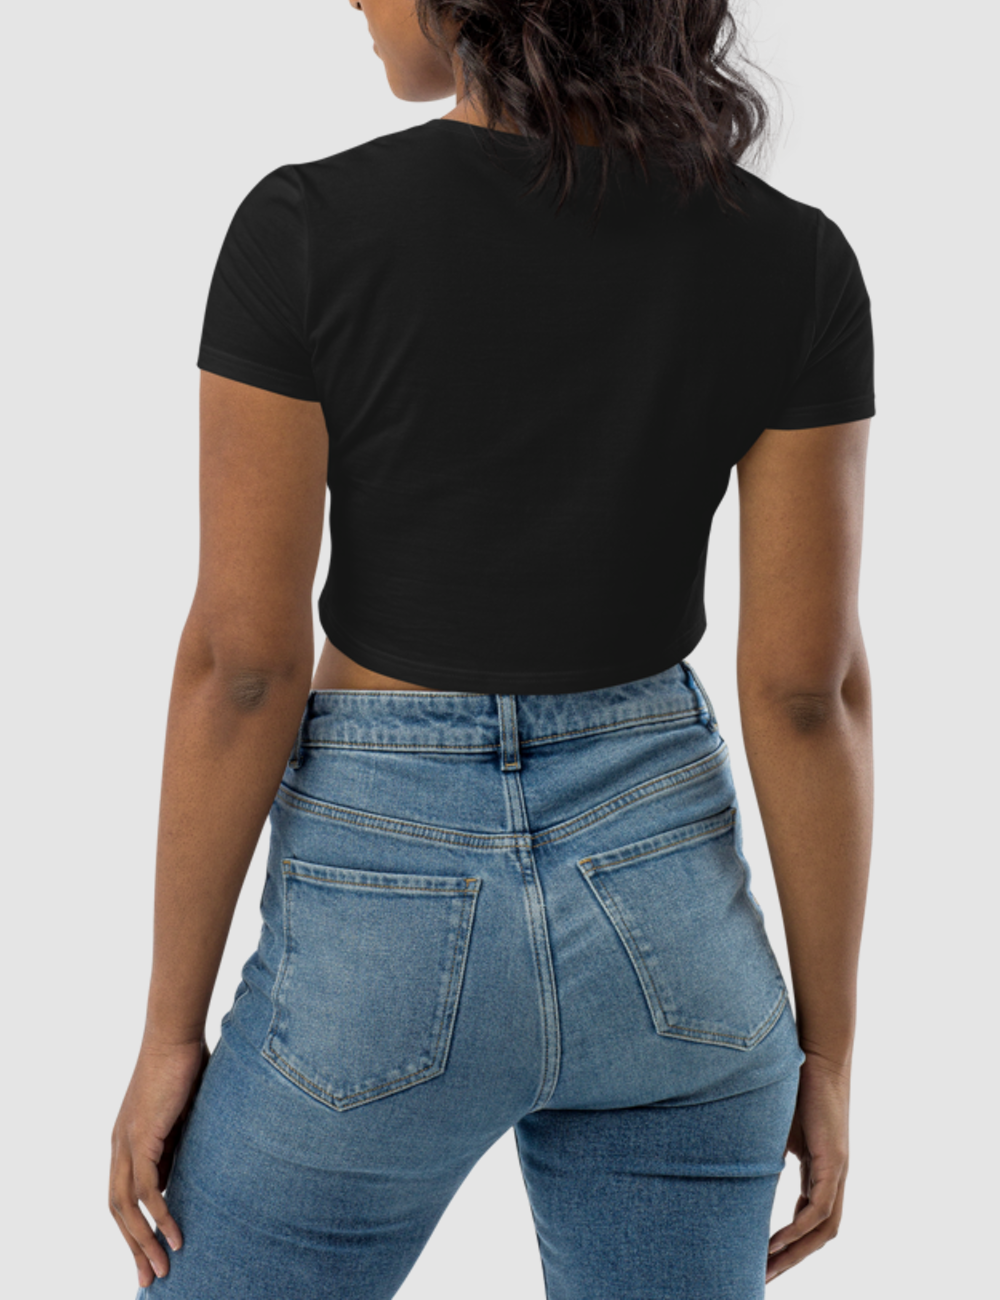 Kiss My Black Ass Women's Fitted Crop Top T-Shirt OniTakai